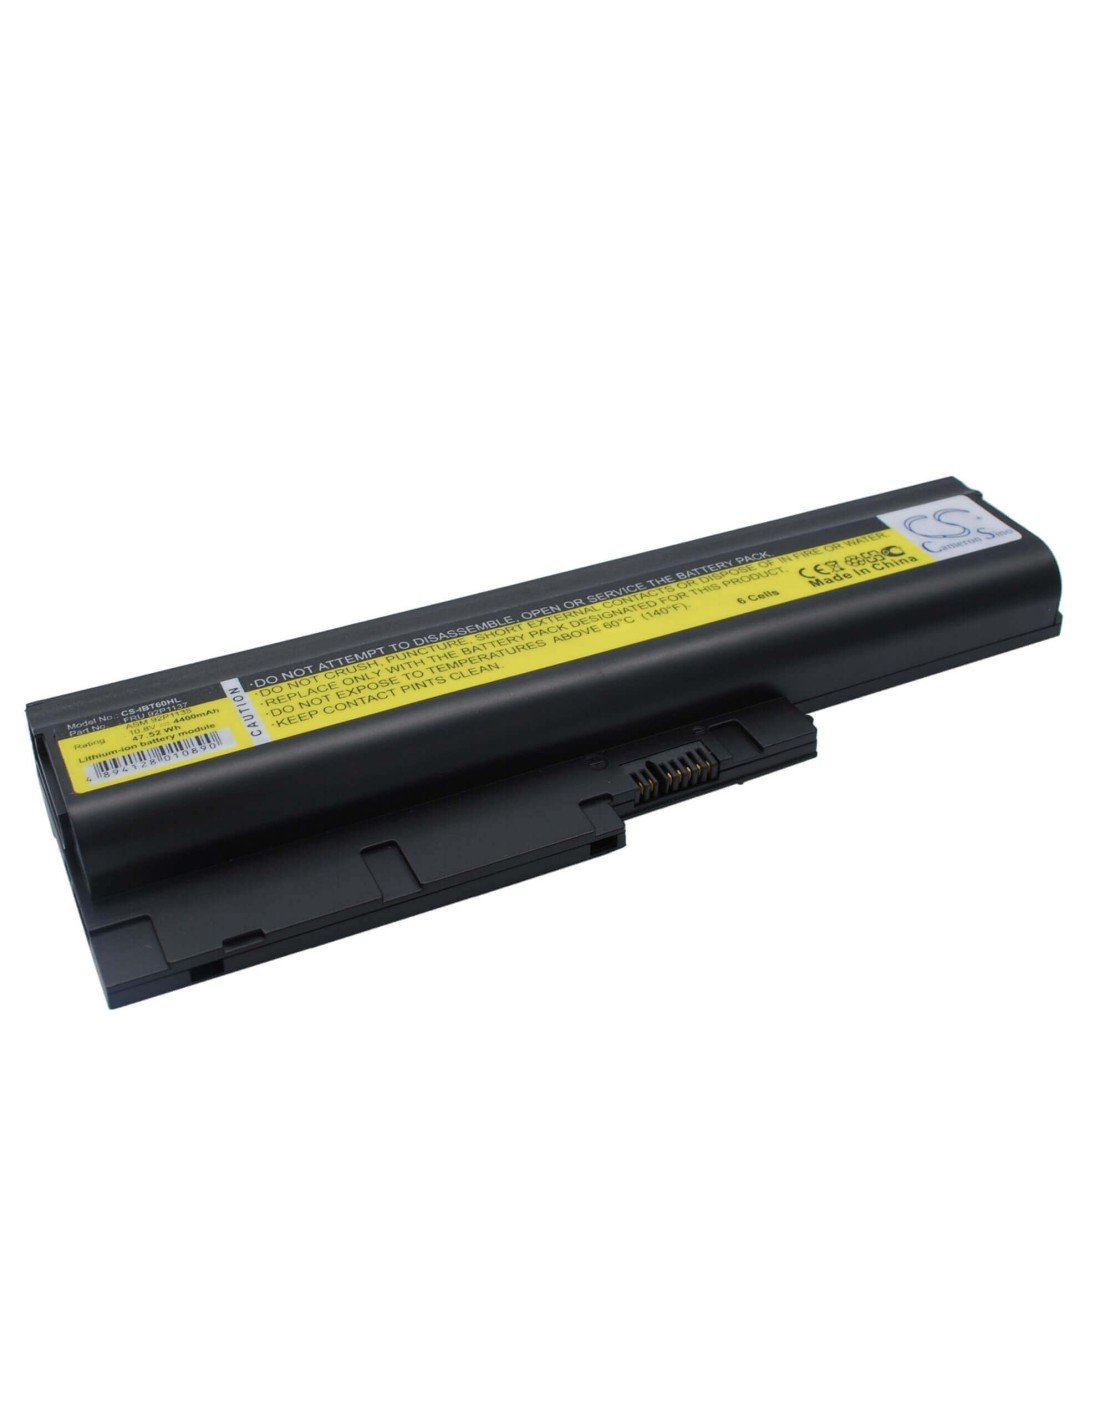 Black Battery for Ibm Thinkpad R60, Thinkpad R61, Thinkpad R60 9455 10.8V, 4400mAh - 47.52Wh